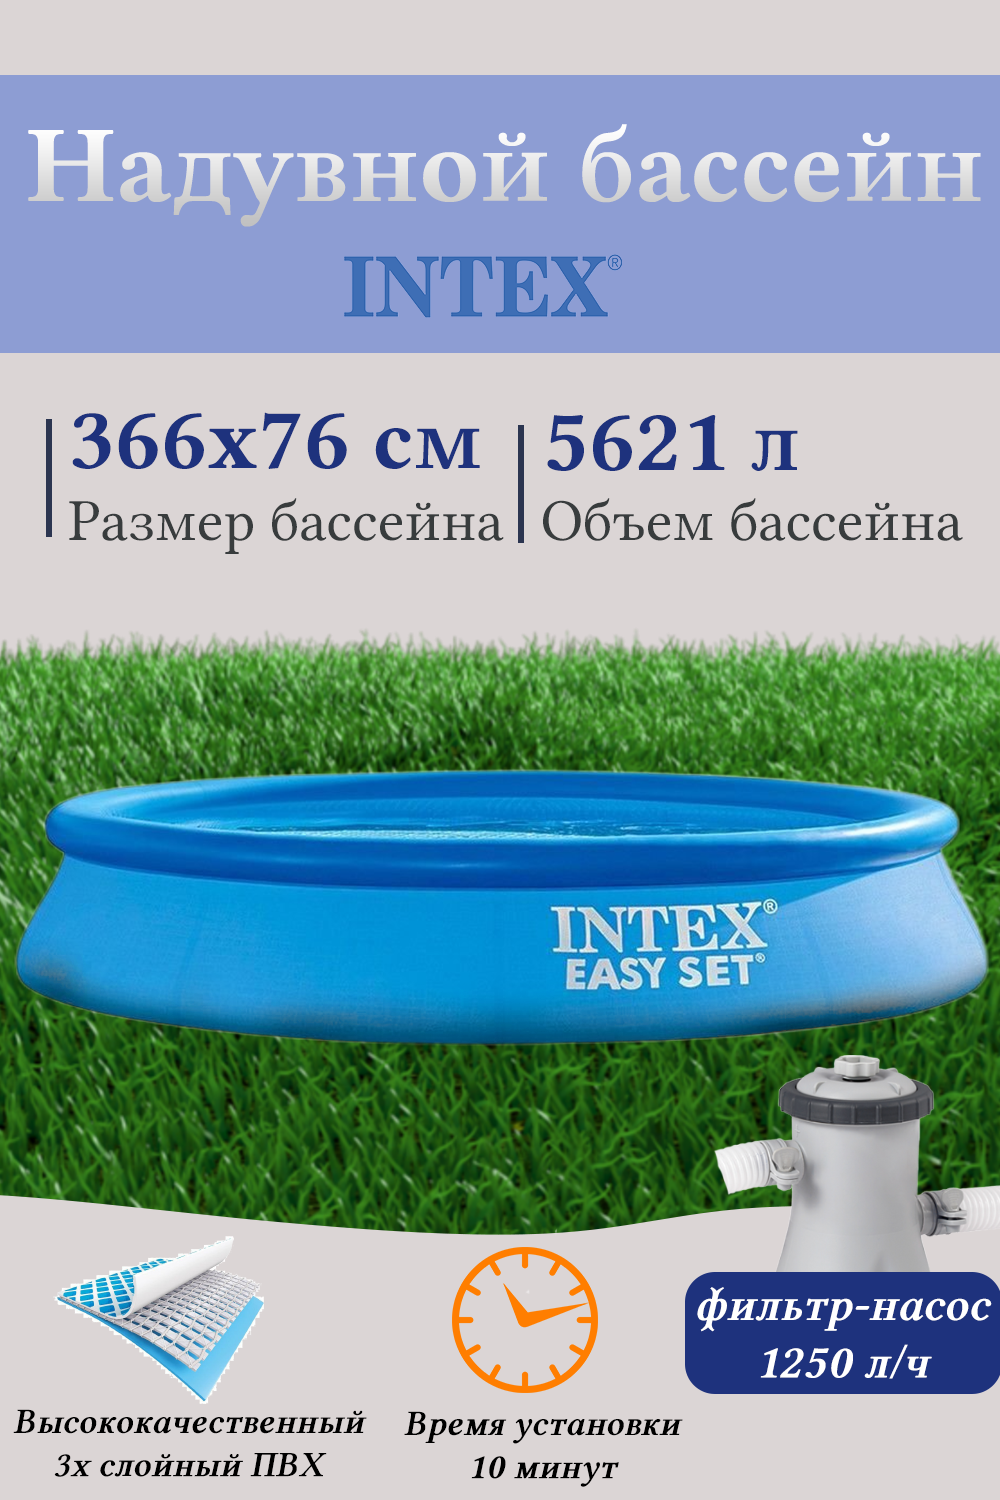 Надувной бассейн INTEX И28132 366х76 см (фильтр-насос 220в)